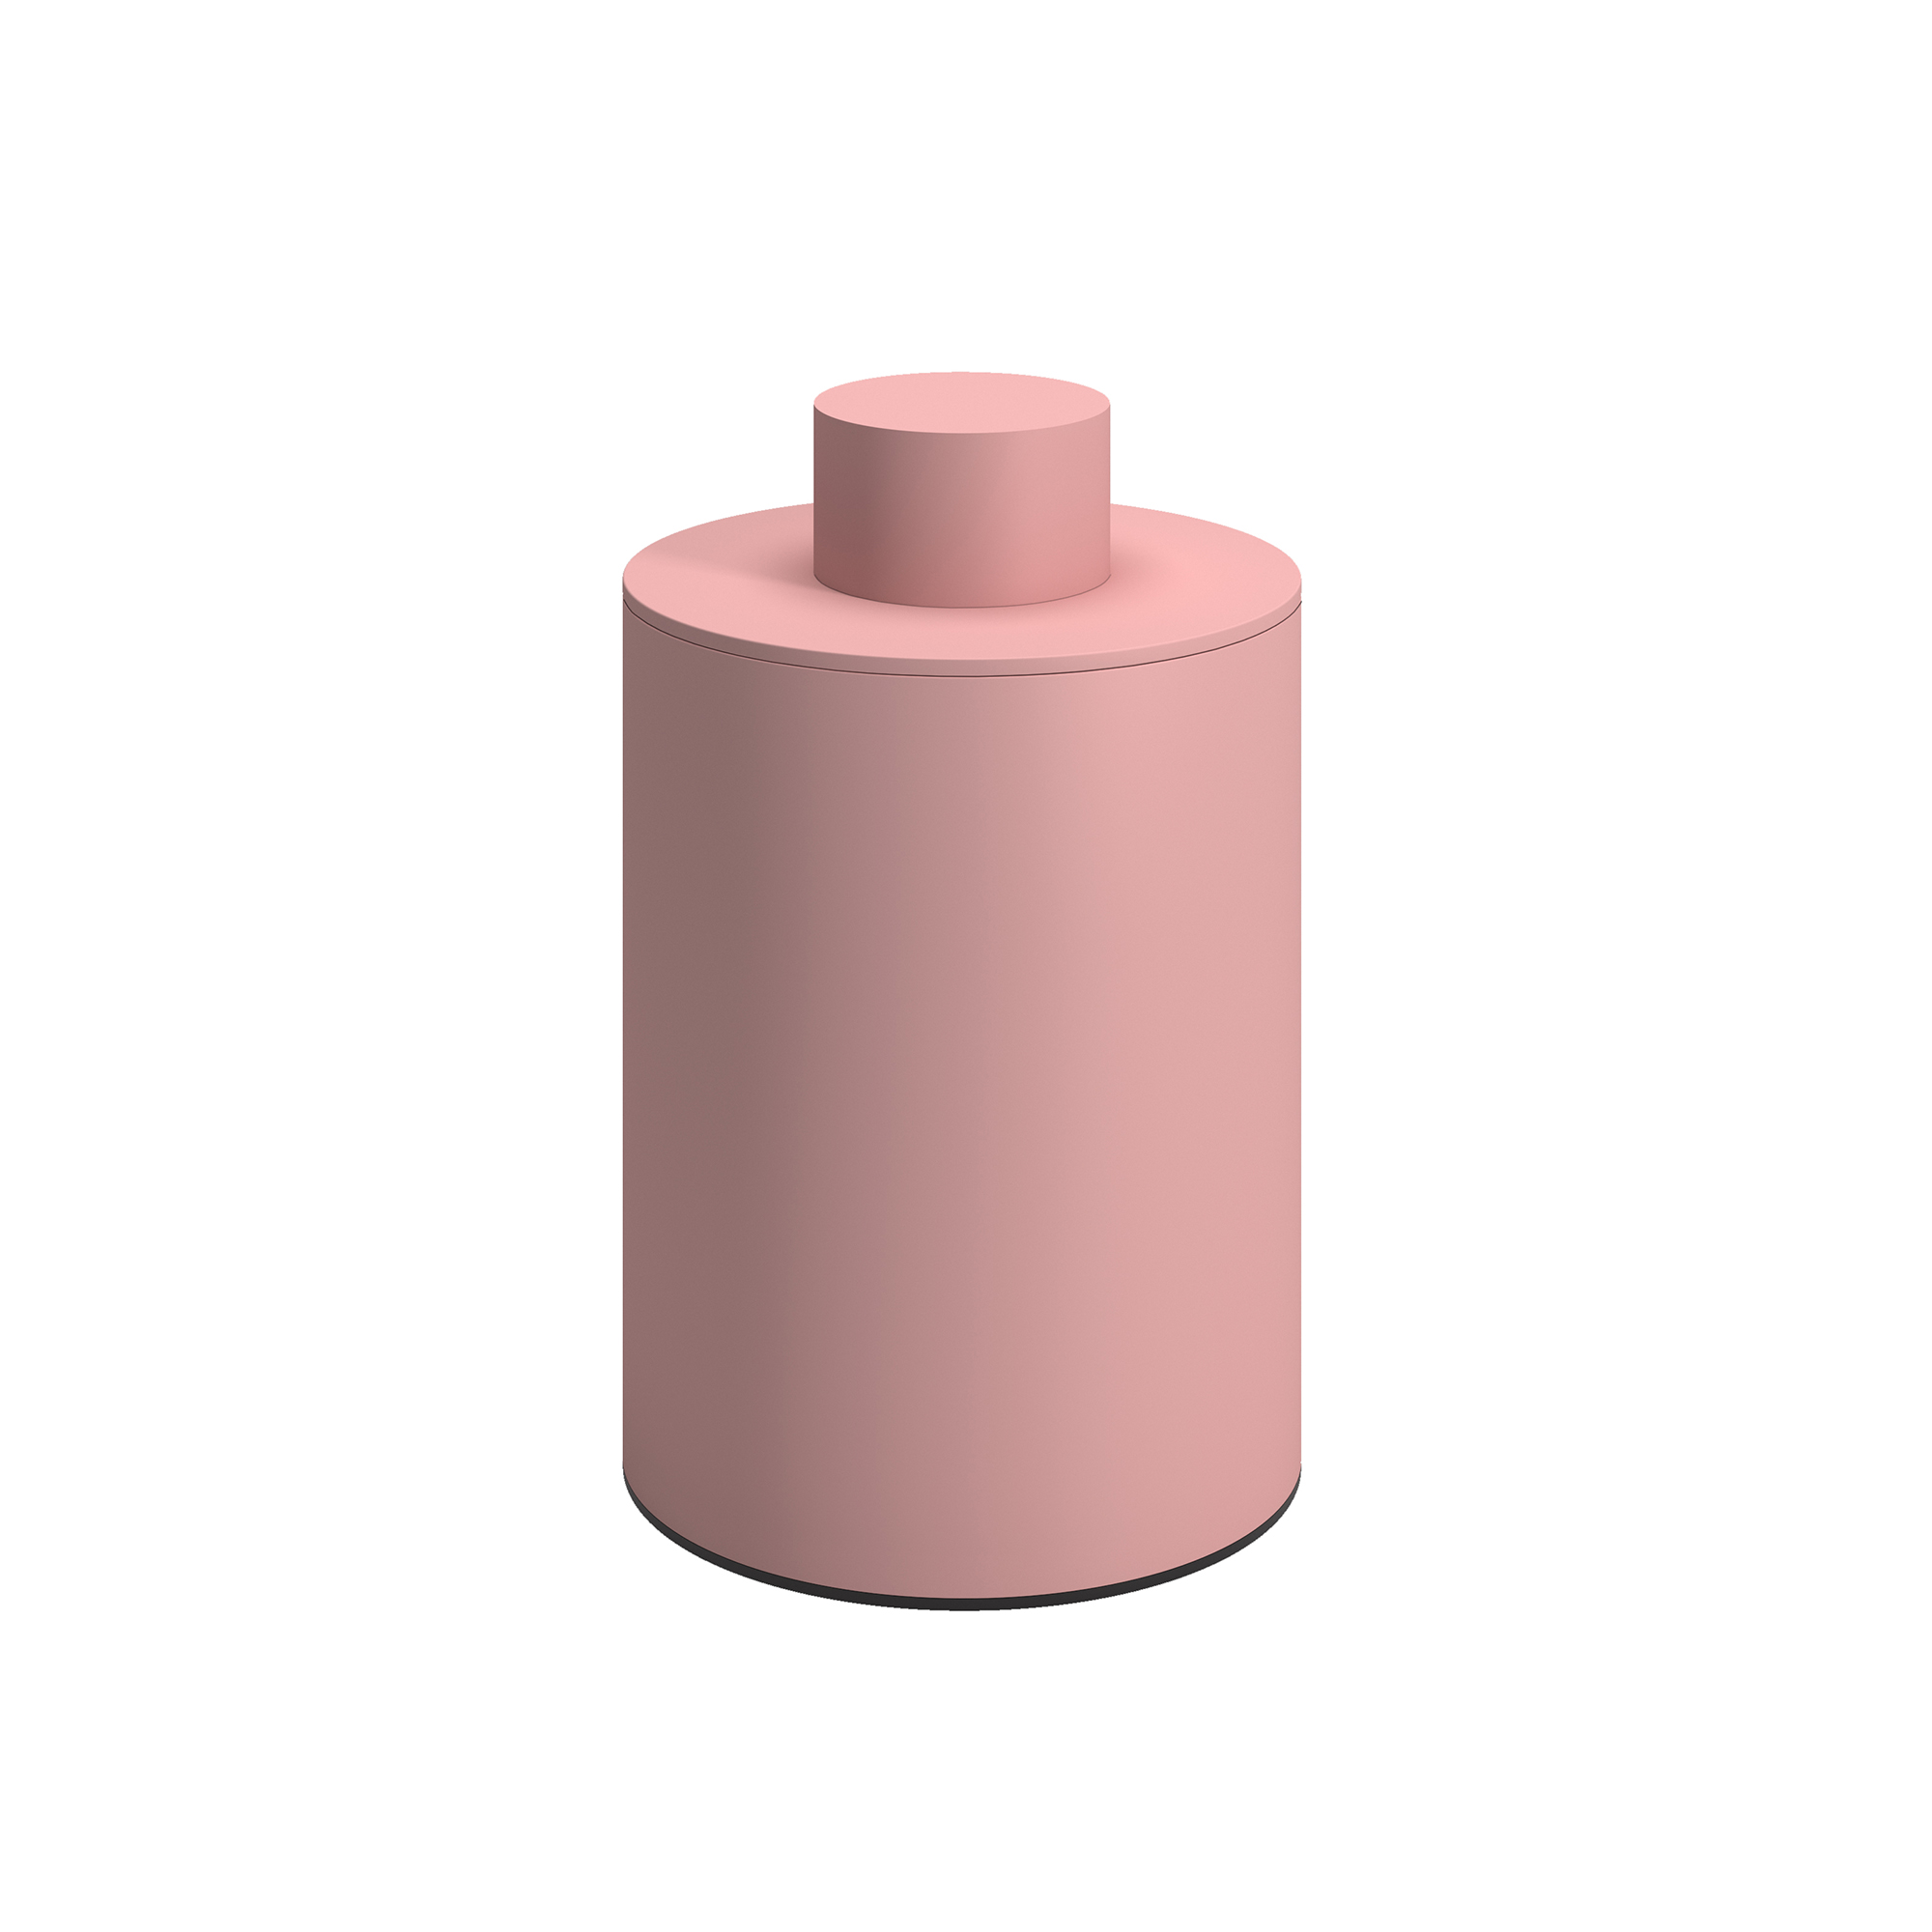 Δοχείο Αποθήκευσης Με Καπάκι Ανοξείδωτο Matt Pink Pam & Co Φ8x15εκ. 94-303 (Υλικό: Ανοξείδωτο, Χρώμα: Ροζ) - Pam & Co - 94-303